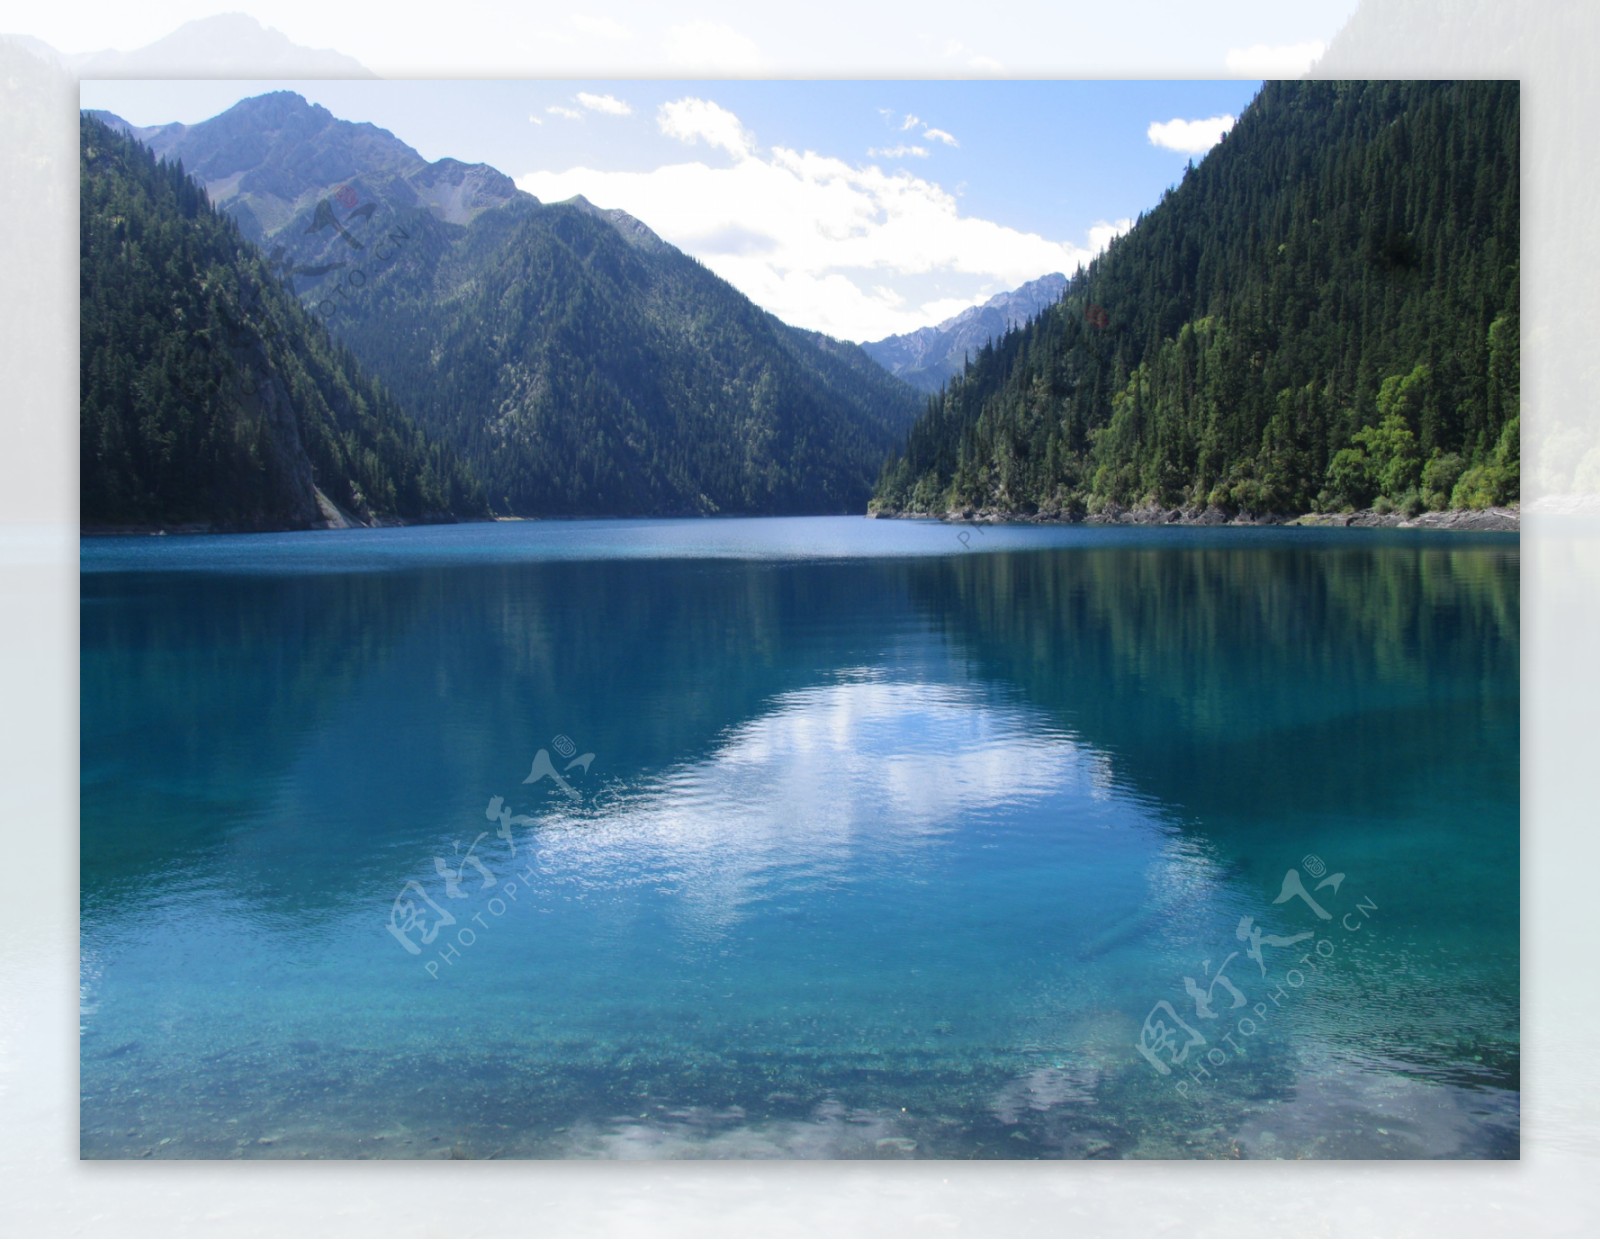 清澈的湖泊图片